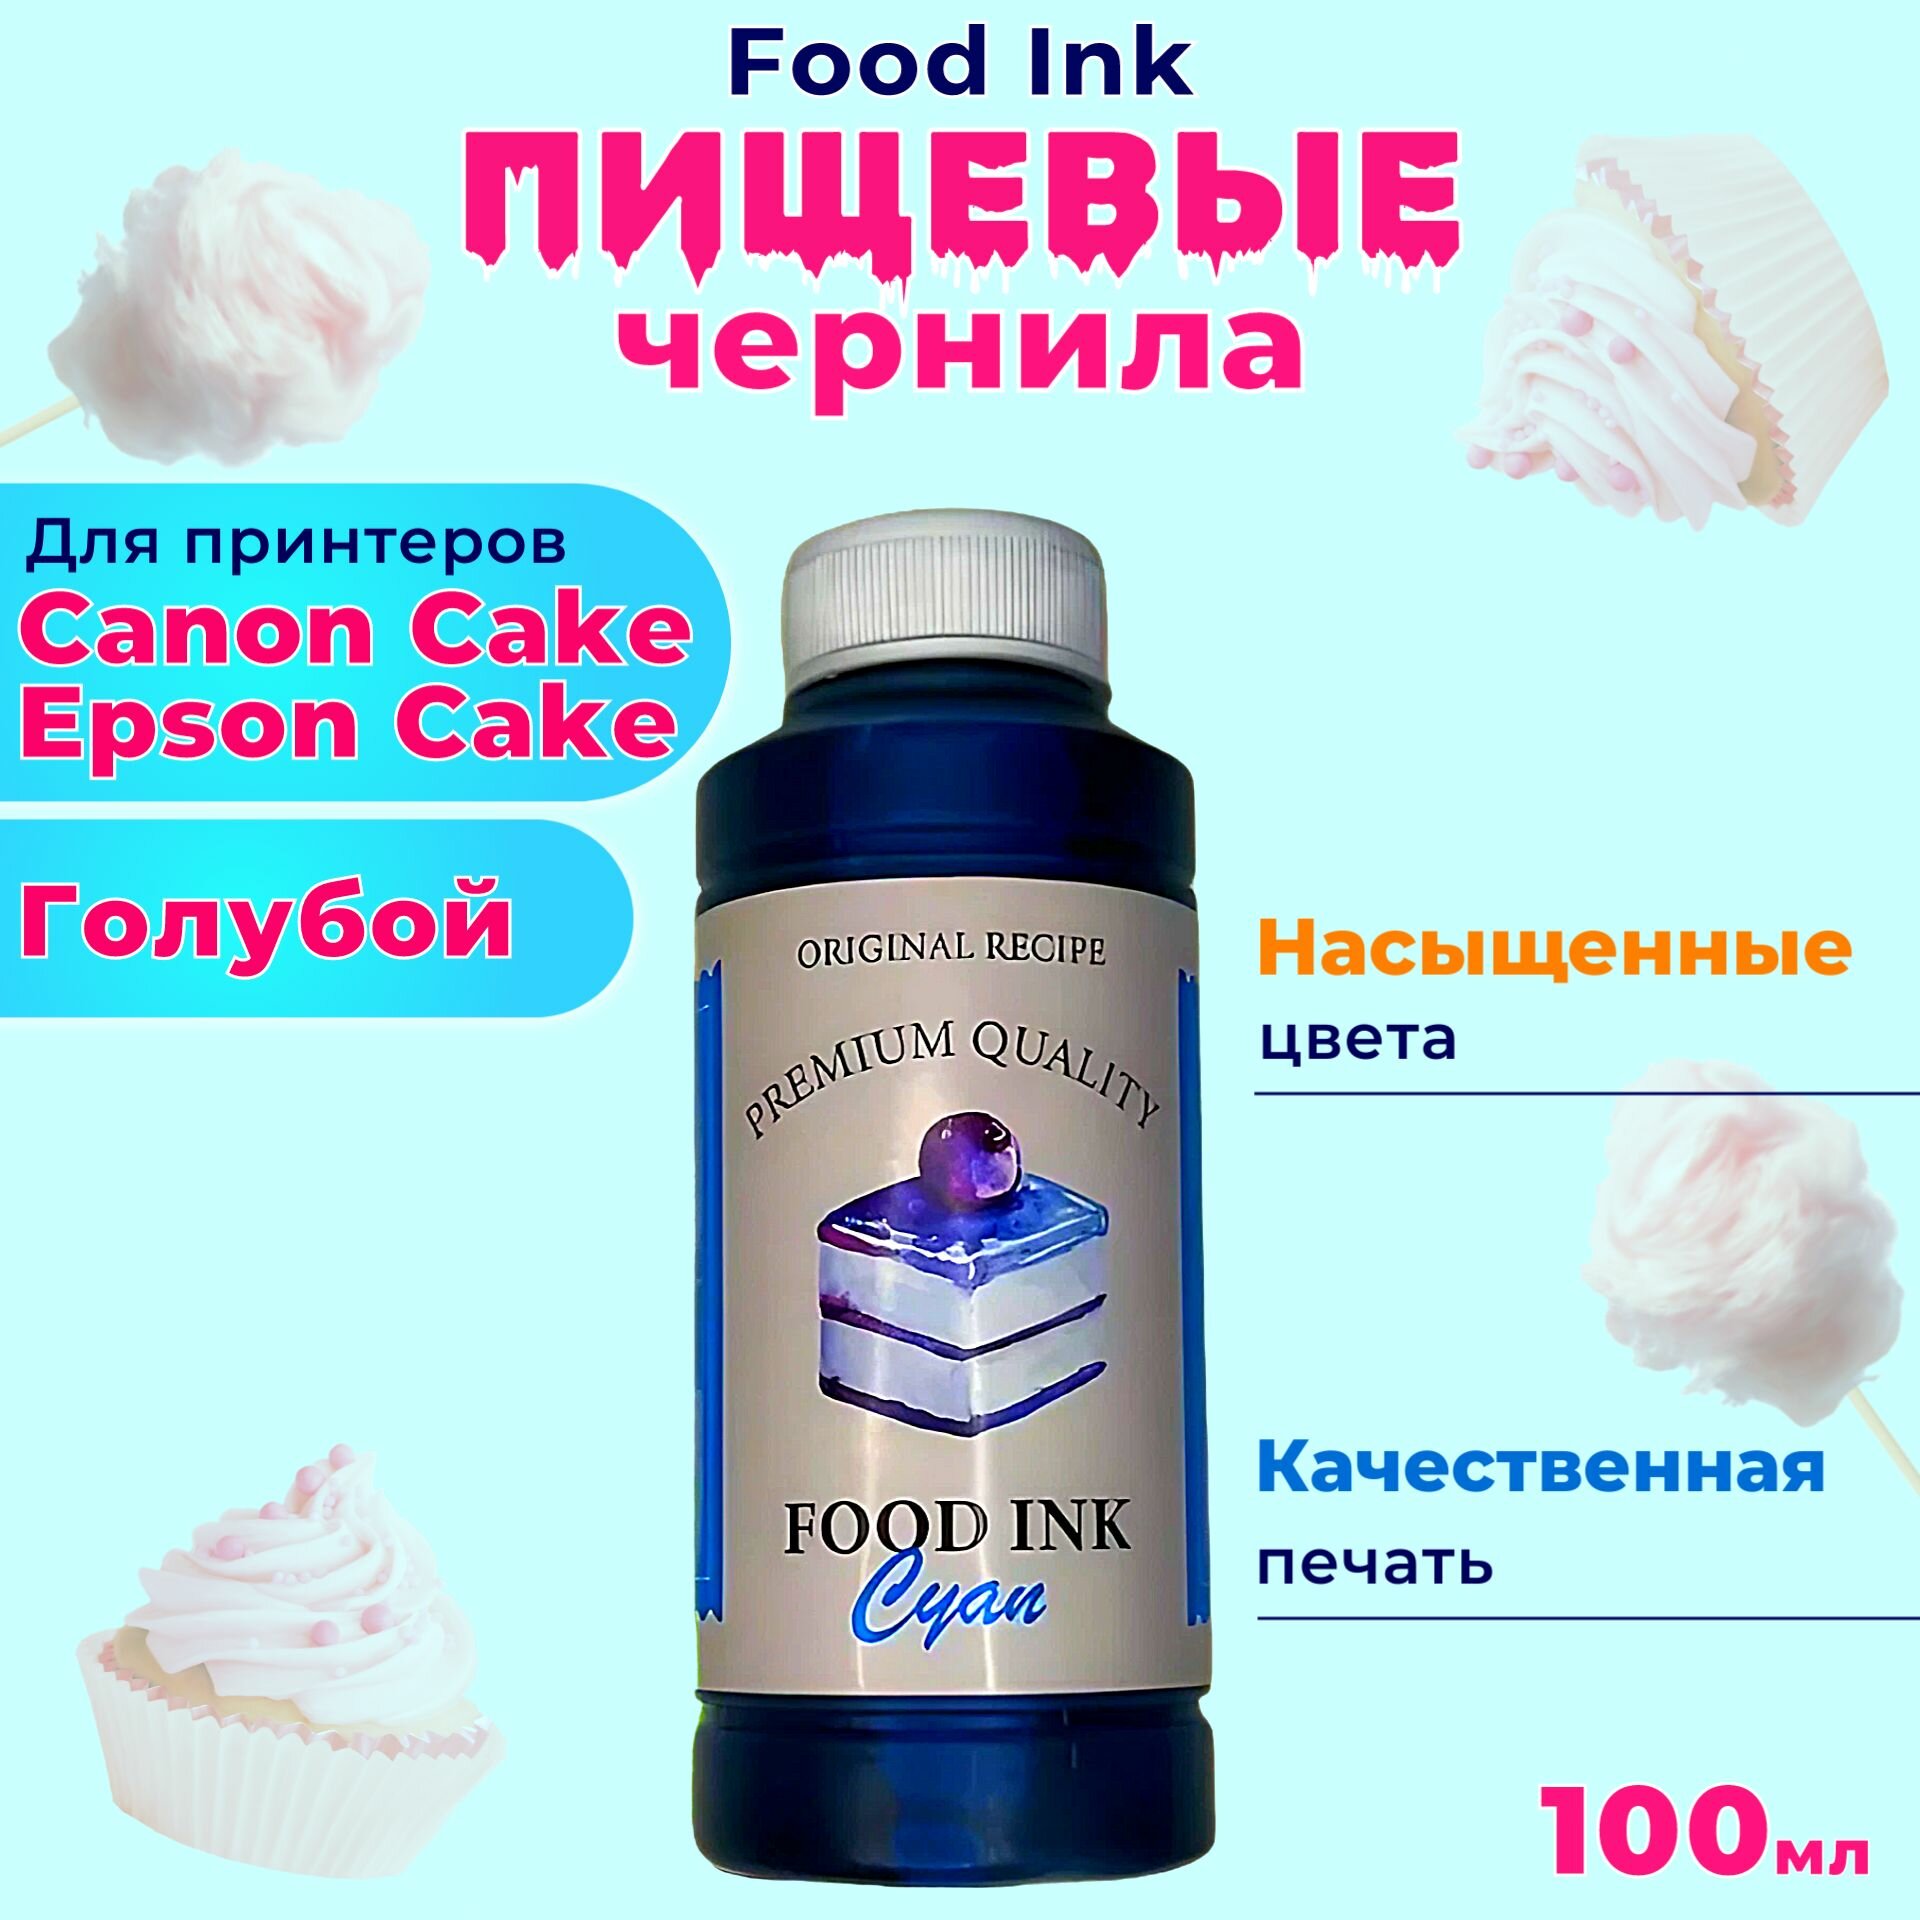 Пищевые съедобные чернила Food Ink 1х100 мл Cyan Голубой для принтера Canon Cake Epson Cake